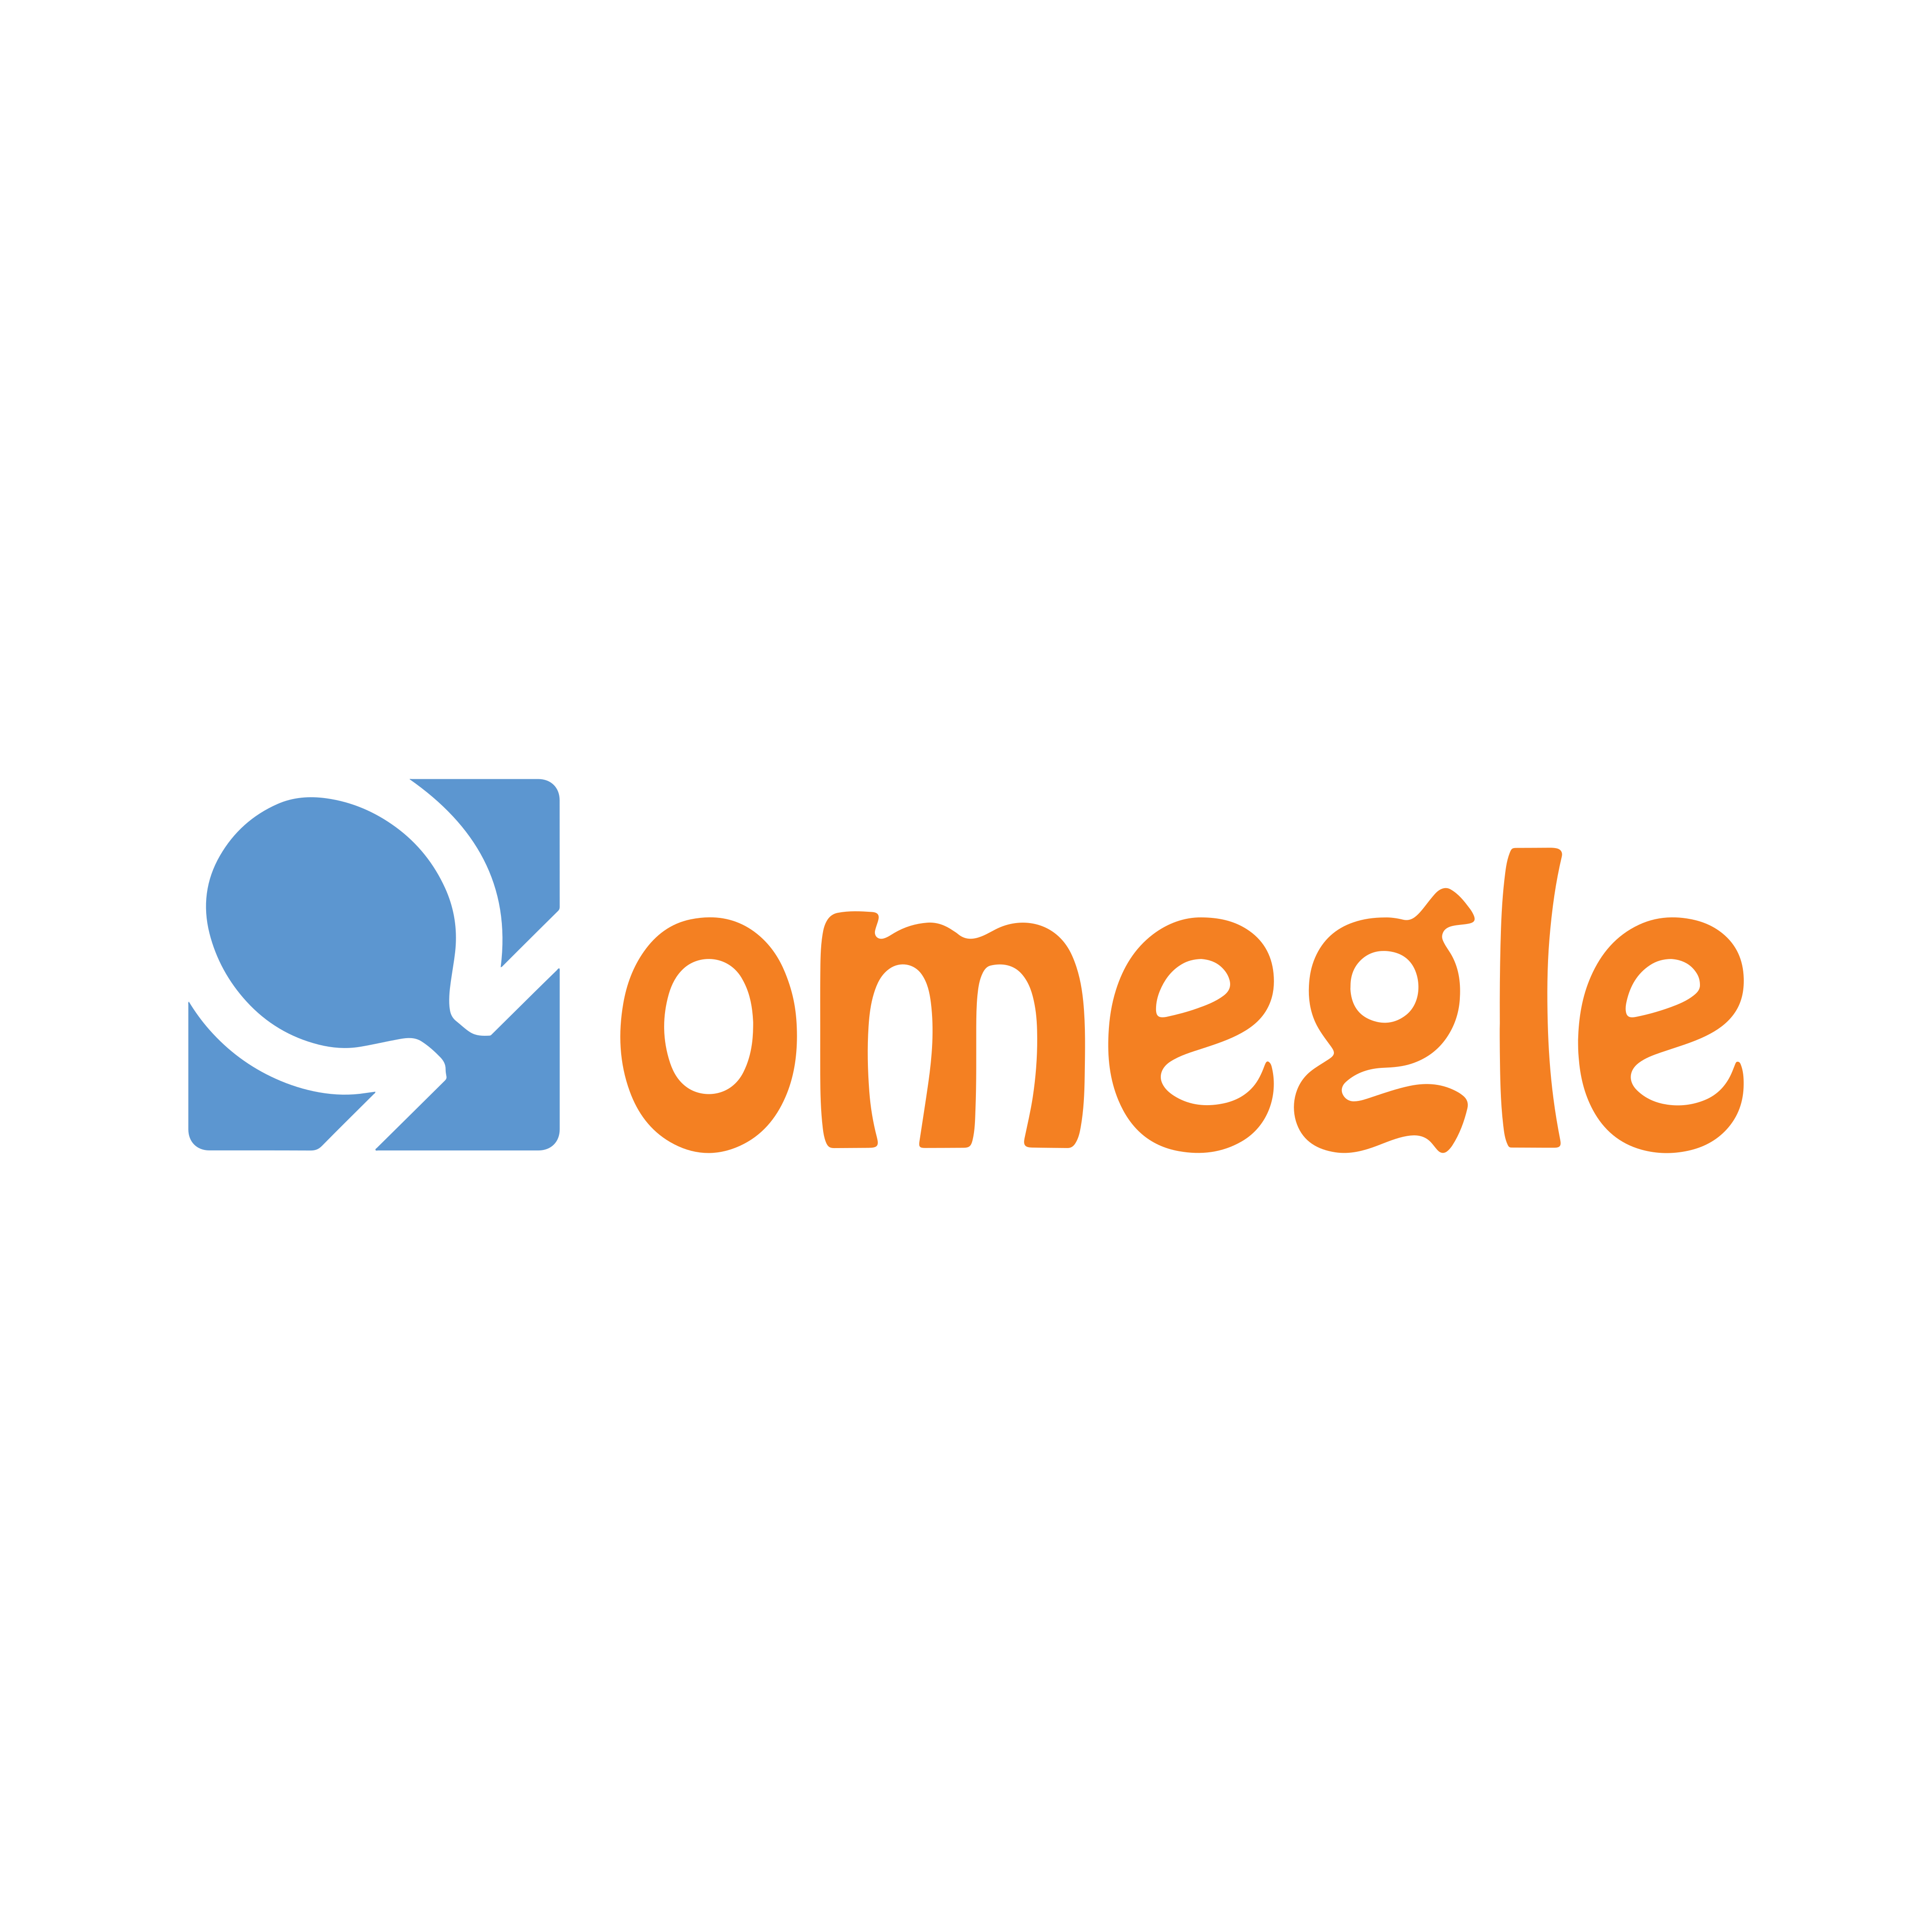 omegle logo 0 - Omegle Logo